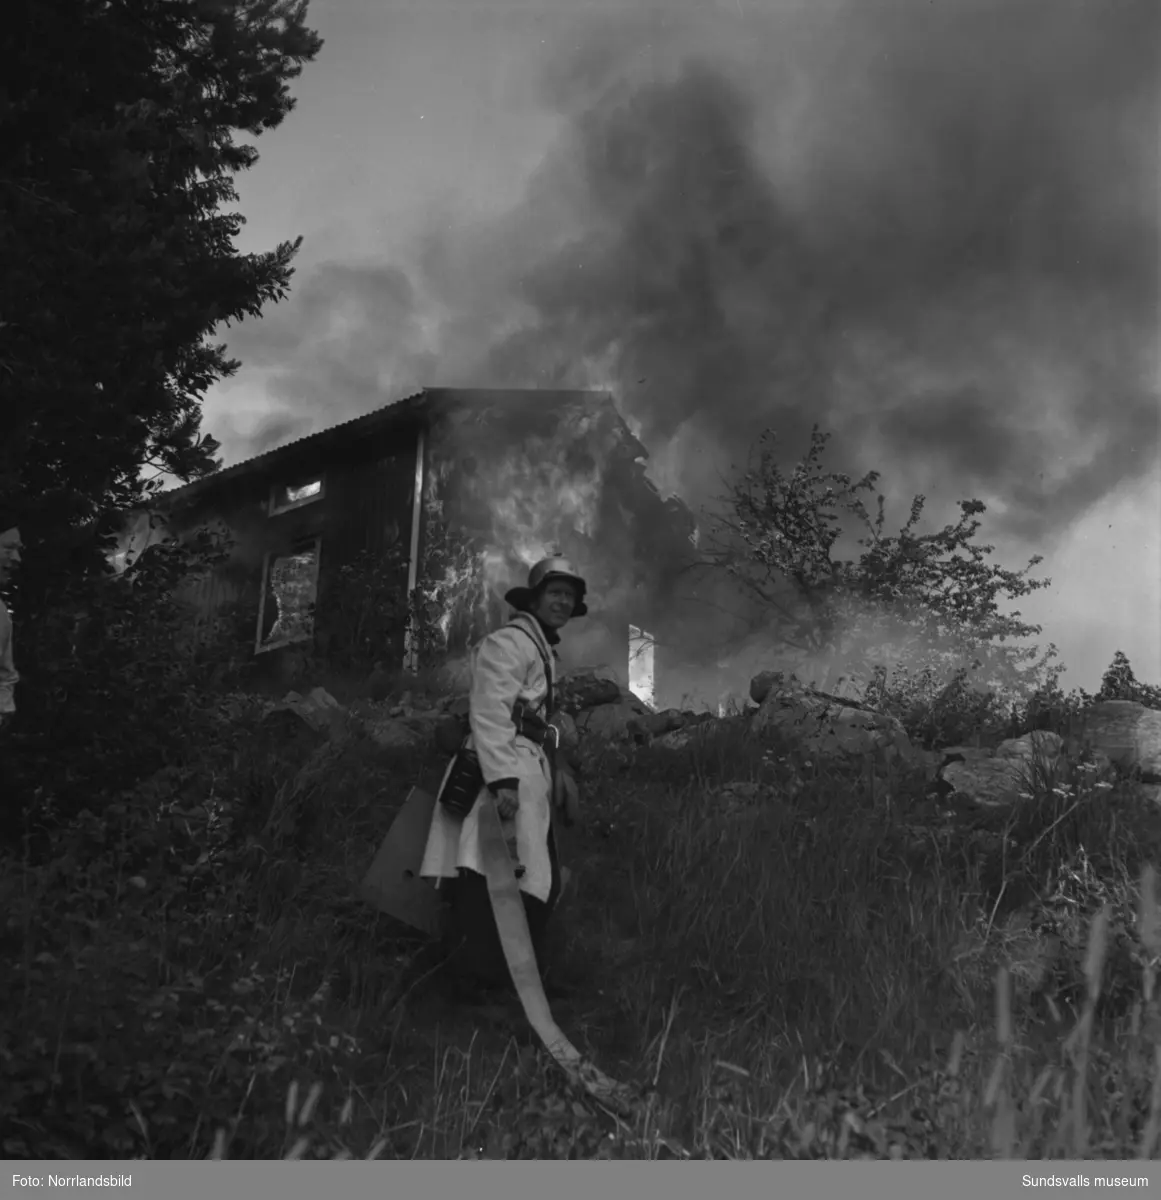 Tre byggnader slukades av elden i en våldsam brand i Allsta. Branden startade i hemmansägare Ture Lindboms ladugård och spred sig snabbt till ladugården hos Valdemar Dahlberg och sedan vidare till Dahlbergs bostadshus. Inga människor kom till skada men en häst och omkring 80 höns omkom i lågorna.